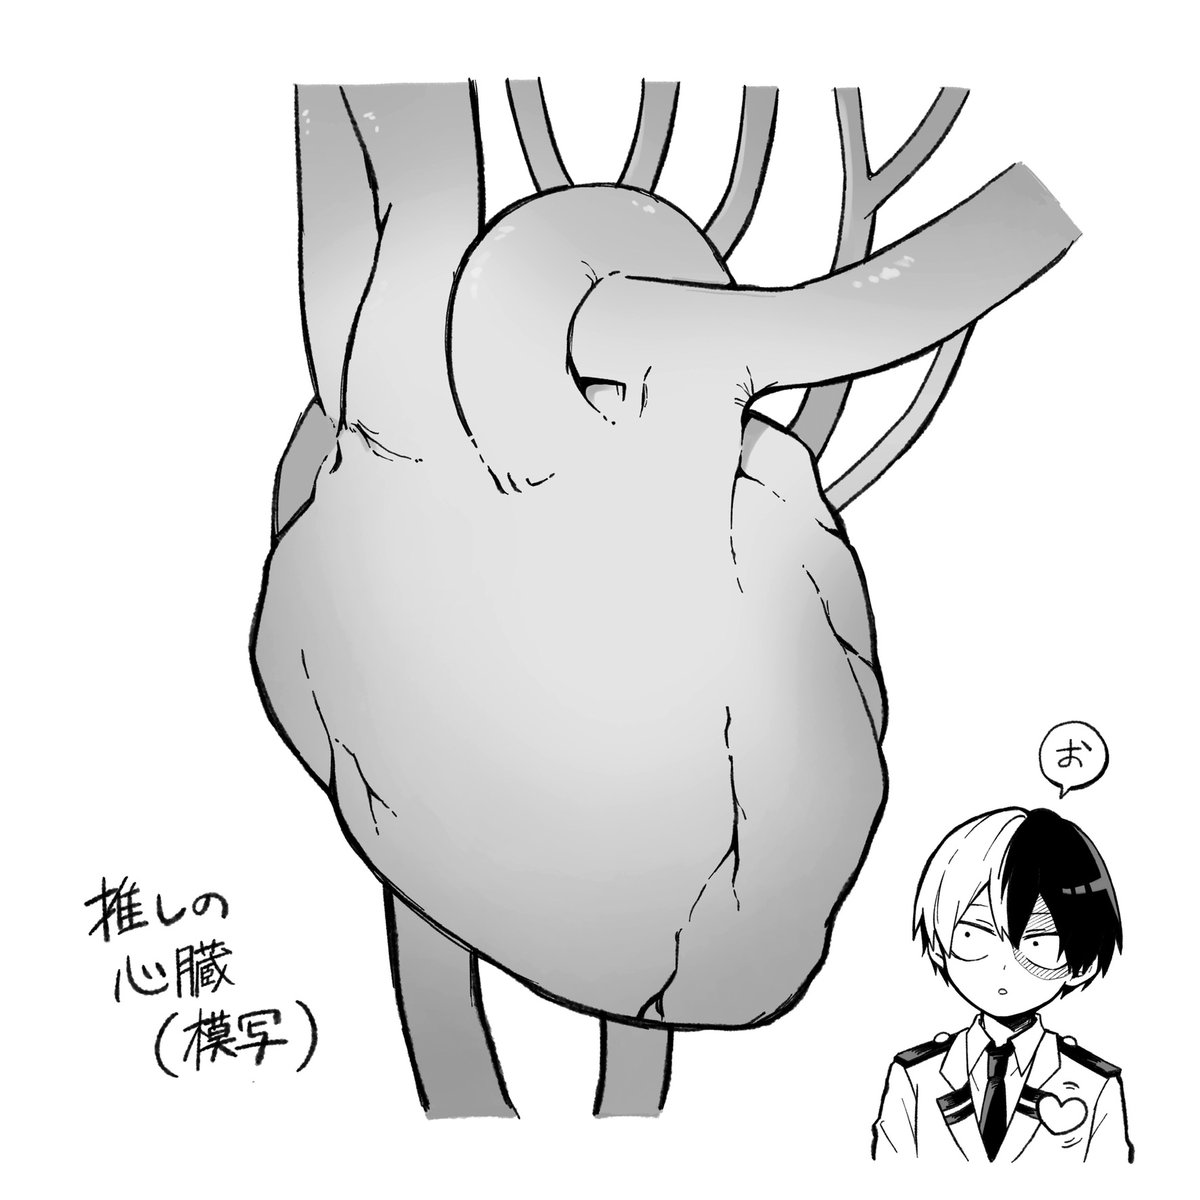 推しの心臓の模写です 